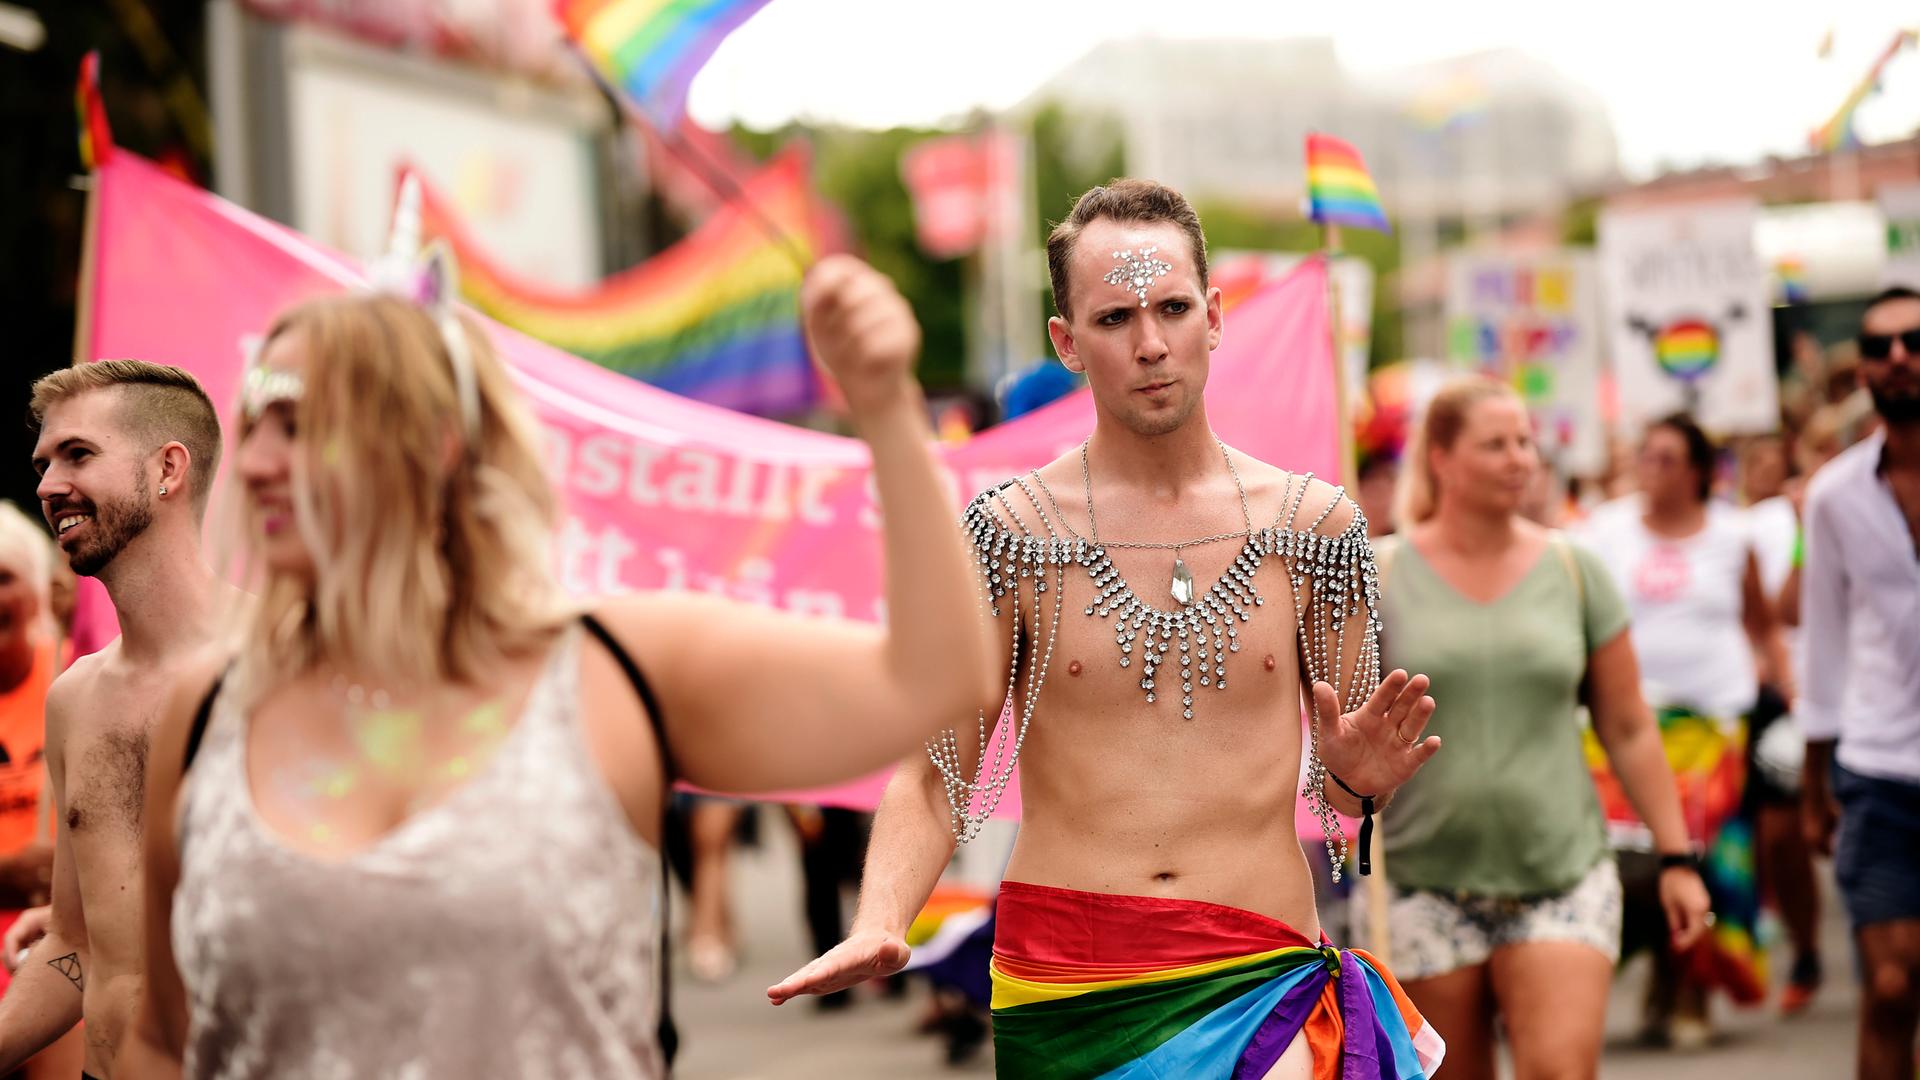 Teilnehmer einer Europride-Parade demonstrieren mit Fahnen in Regenbogen-Farben